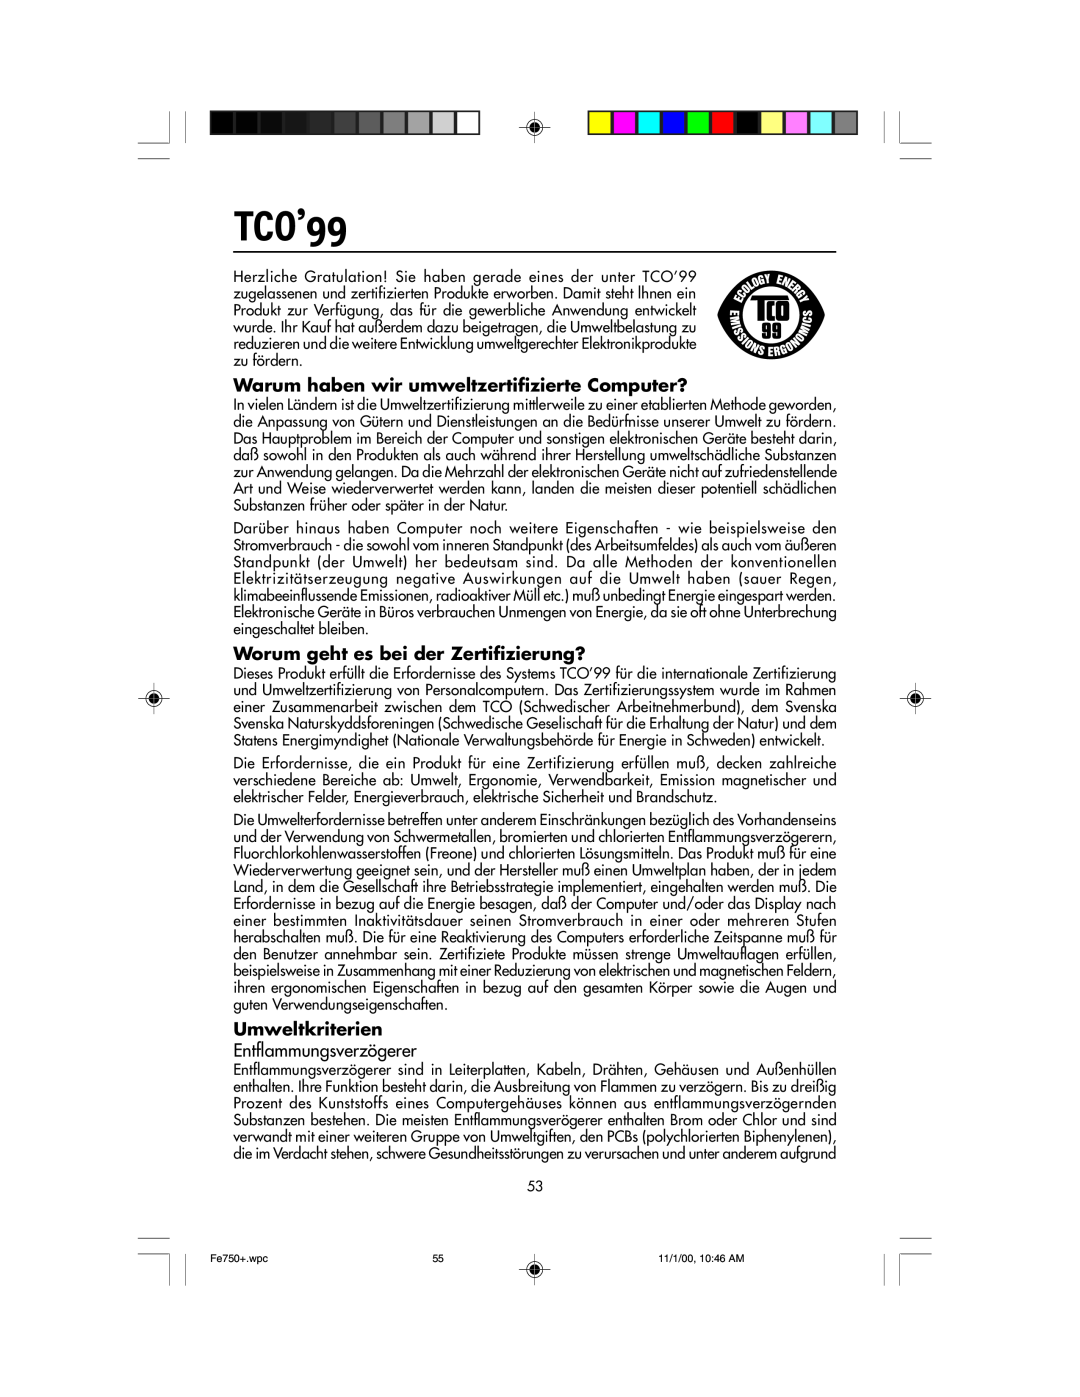 NEC FE750 Plus user manual TCO’99, Warum haben wir umweltzertifizierte Computer?, Worum geht es bei der Zertifizierung? 